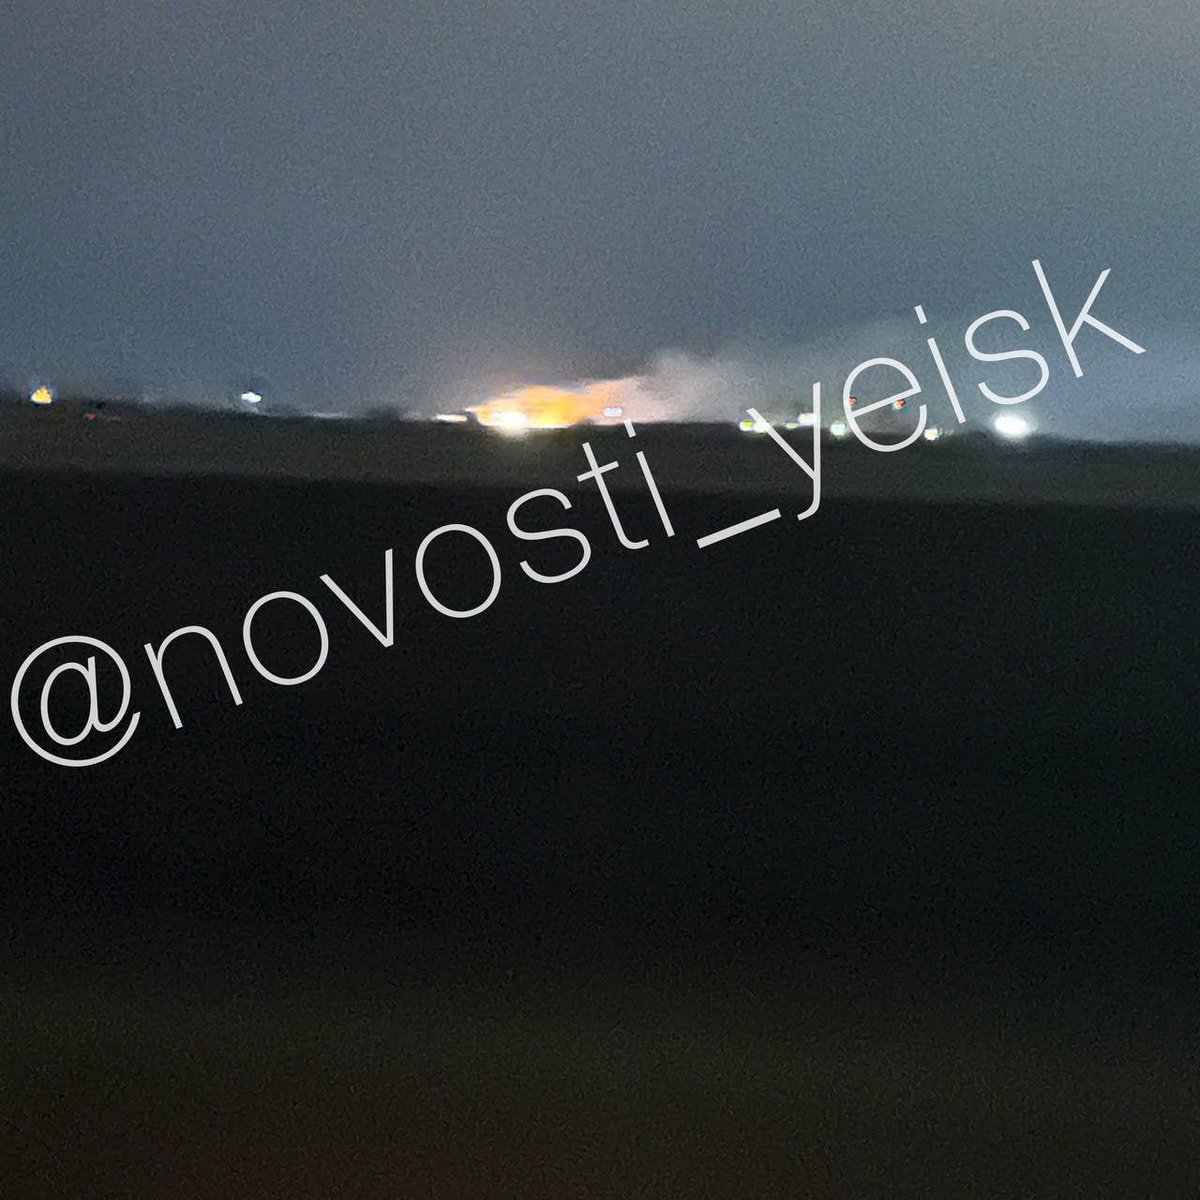 Incêndios e explosões foram relatados perto da base aérea em Yeysk, Krasnodar Krai